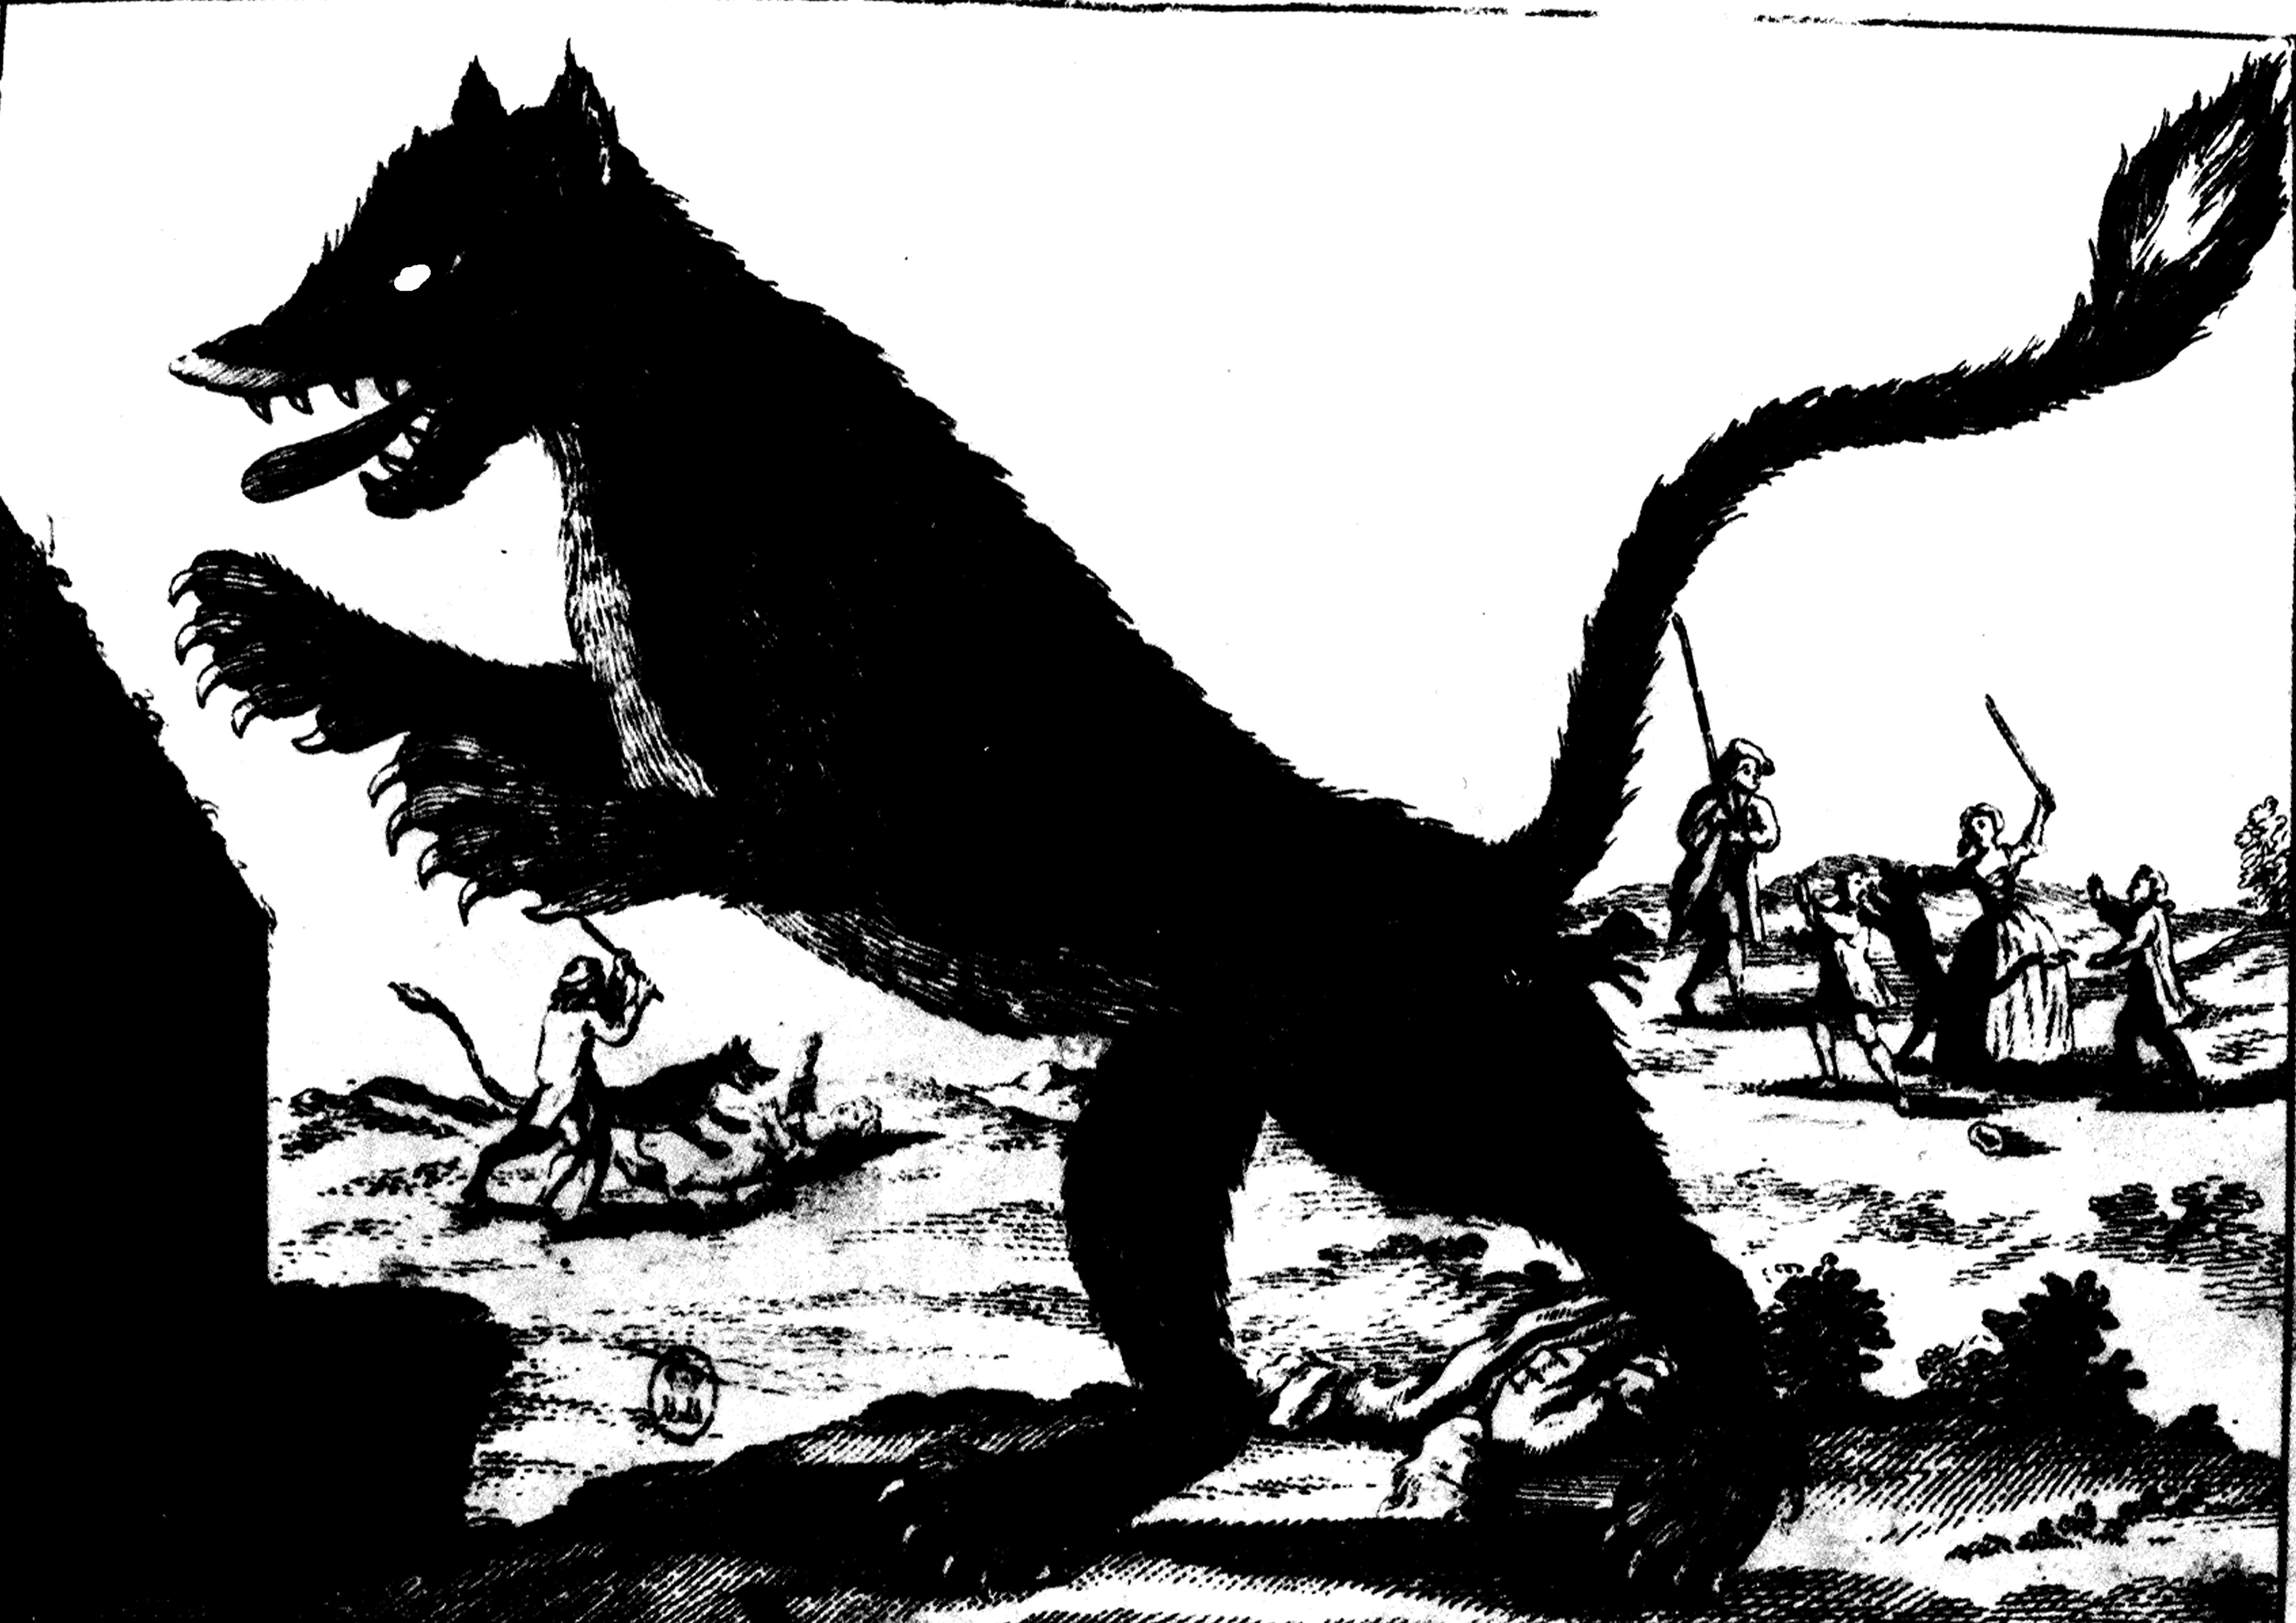 Une gravure de la bête du Gévaudan dans un livre du 18e siècle.